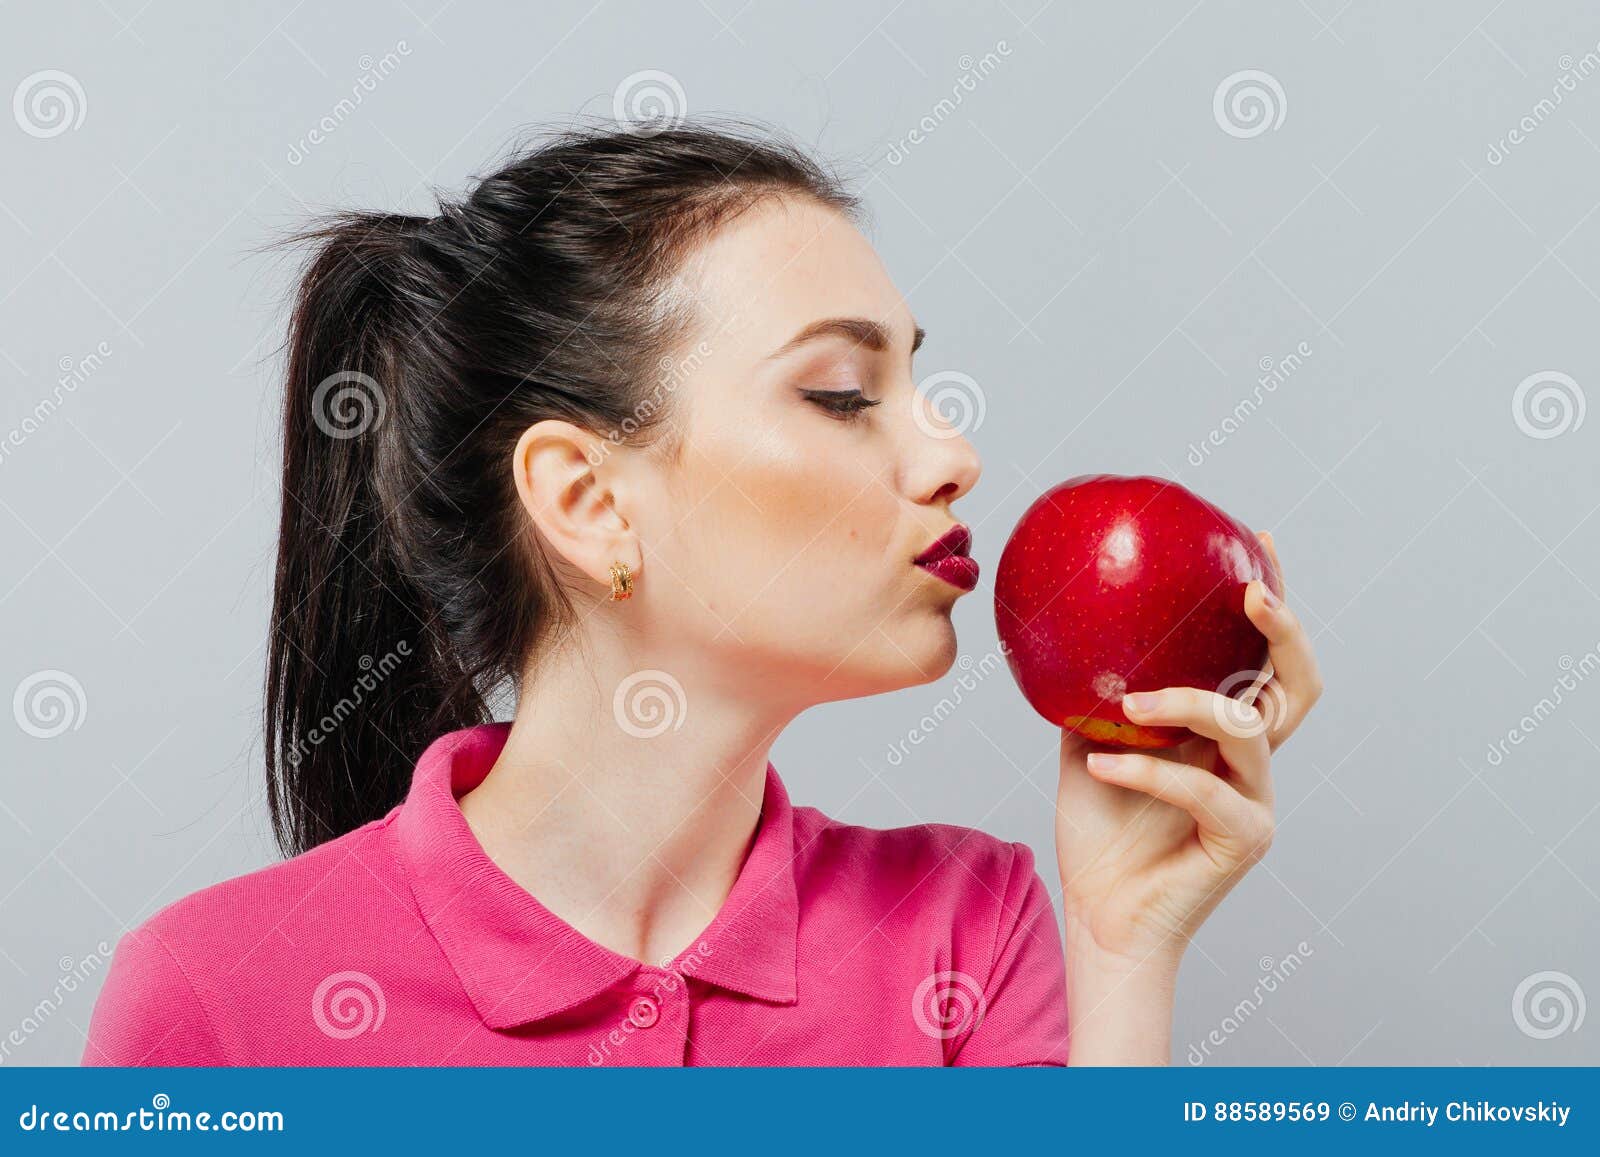 Сон есть красное яблоко. Яблоко надкушенное в виде женщины. Девушка откусывает яблоко. Симпатичная девушка откусывает яблоко. Она ест яблоко.